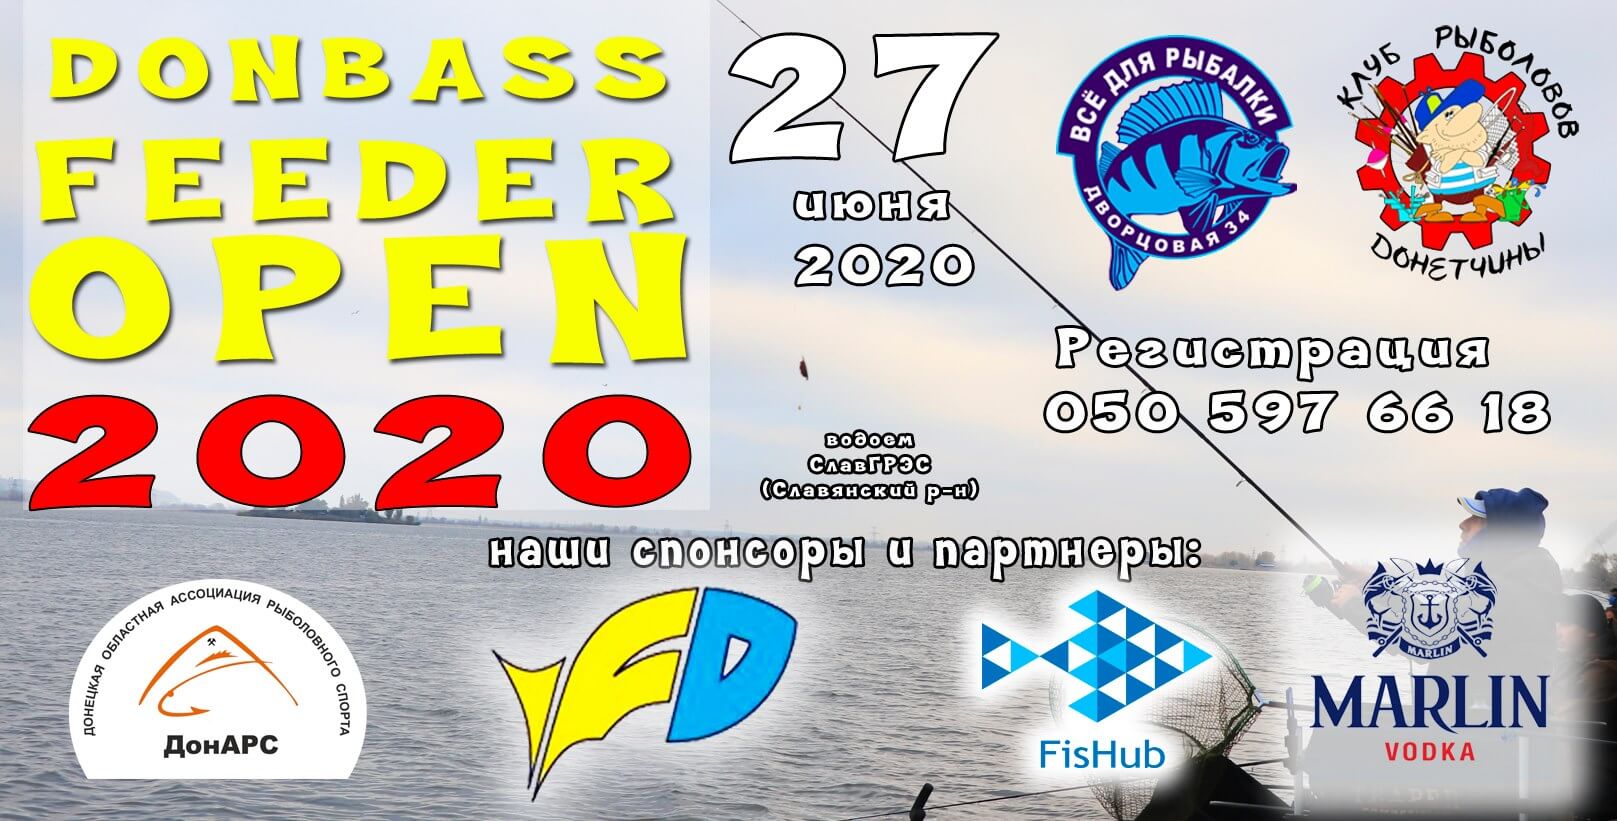 Donbass Feeder Open 2020